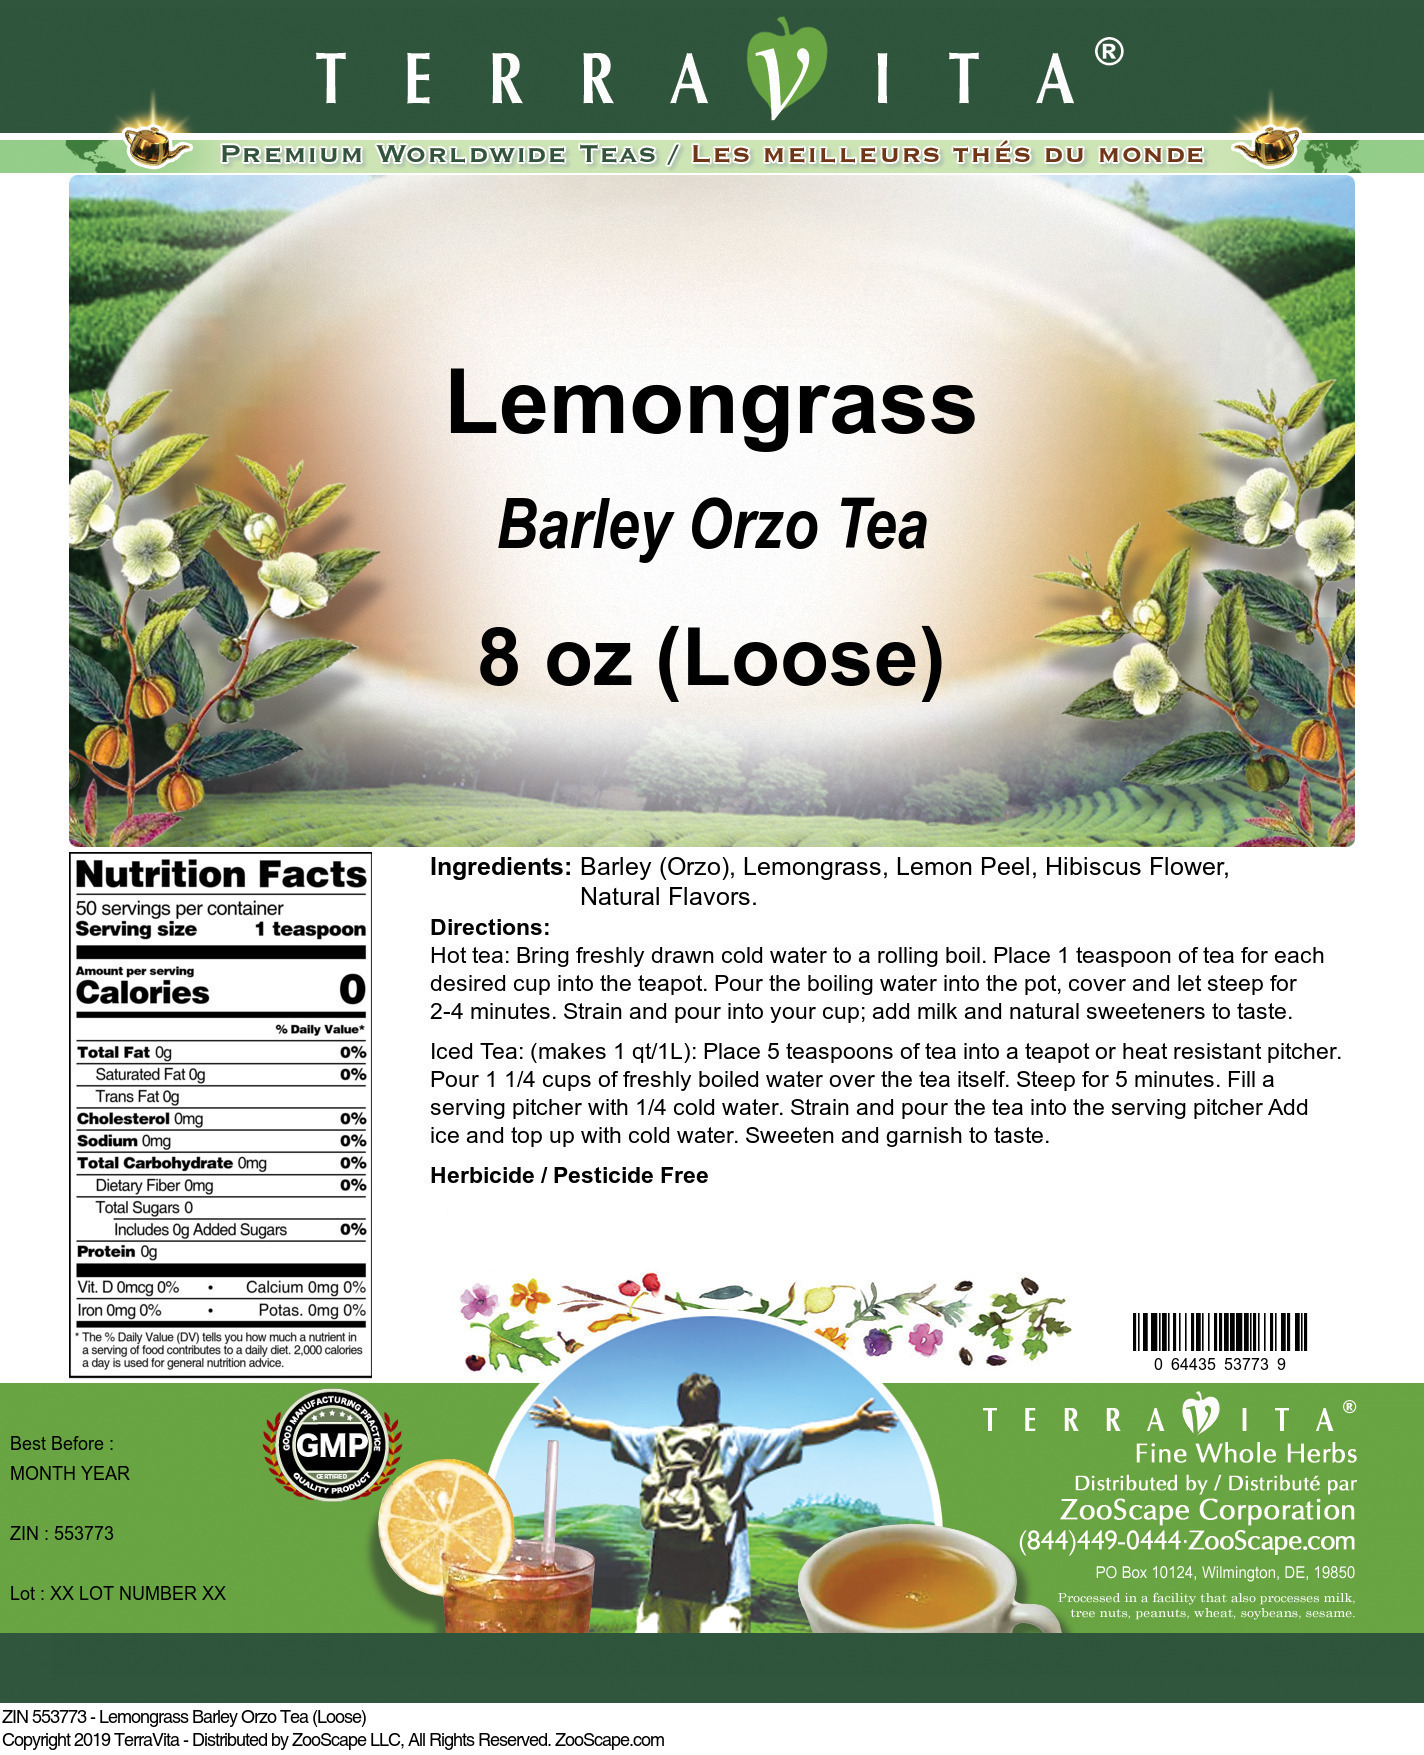 Lemongrass Barley Orzo Tea (Loose) - Label